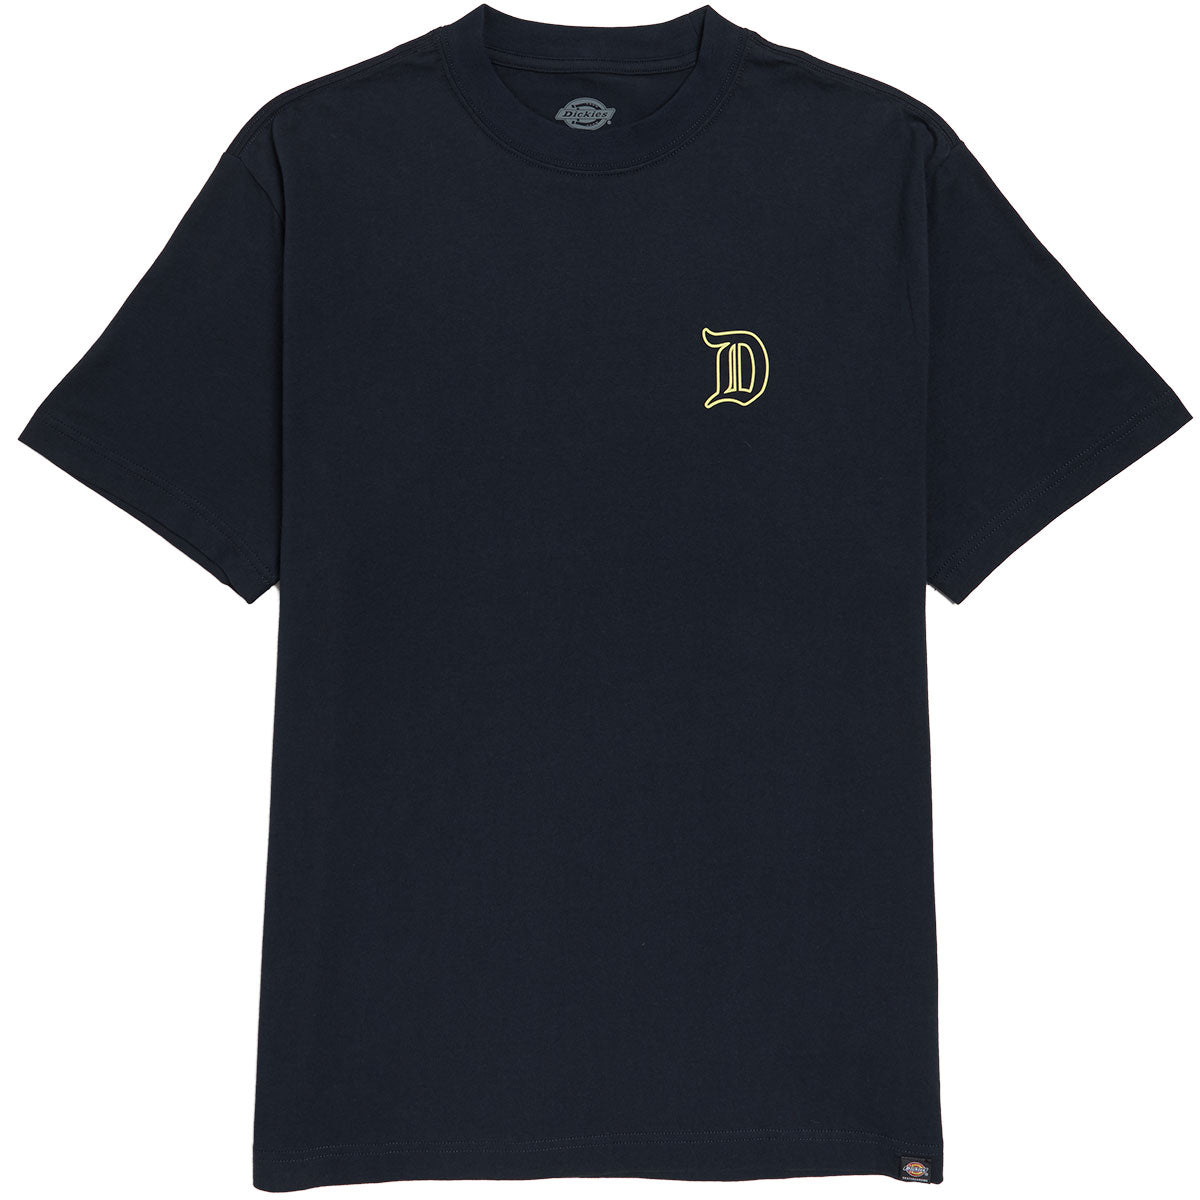 Dickies Guy Mariano Graphic T-Shirt - Dark Navy image 1